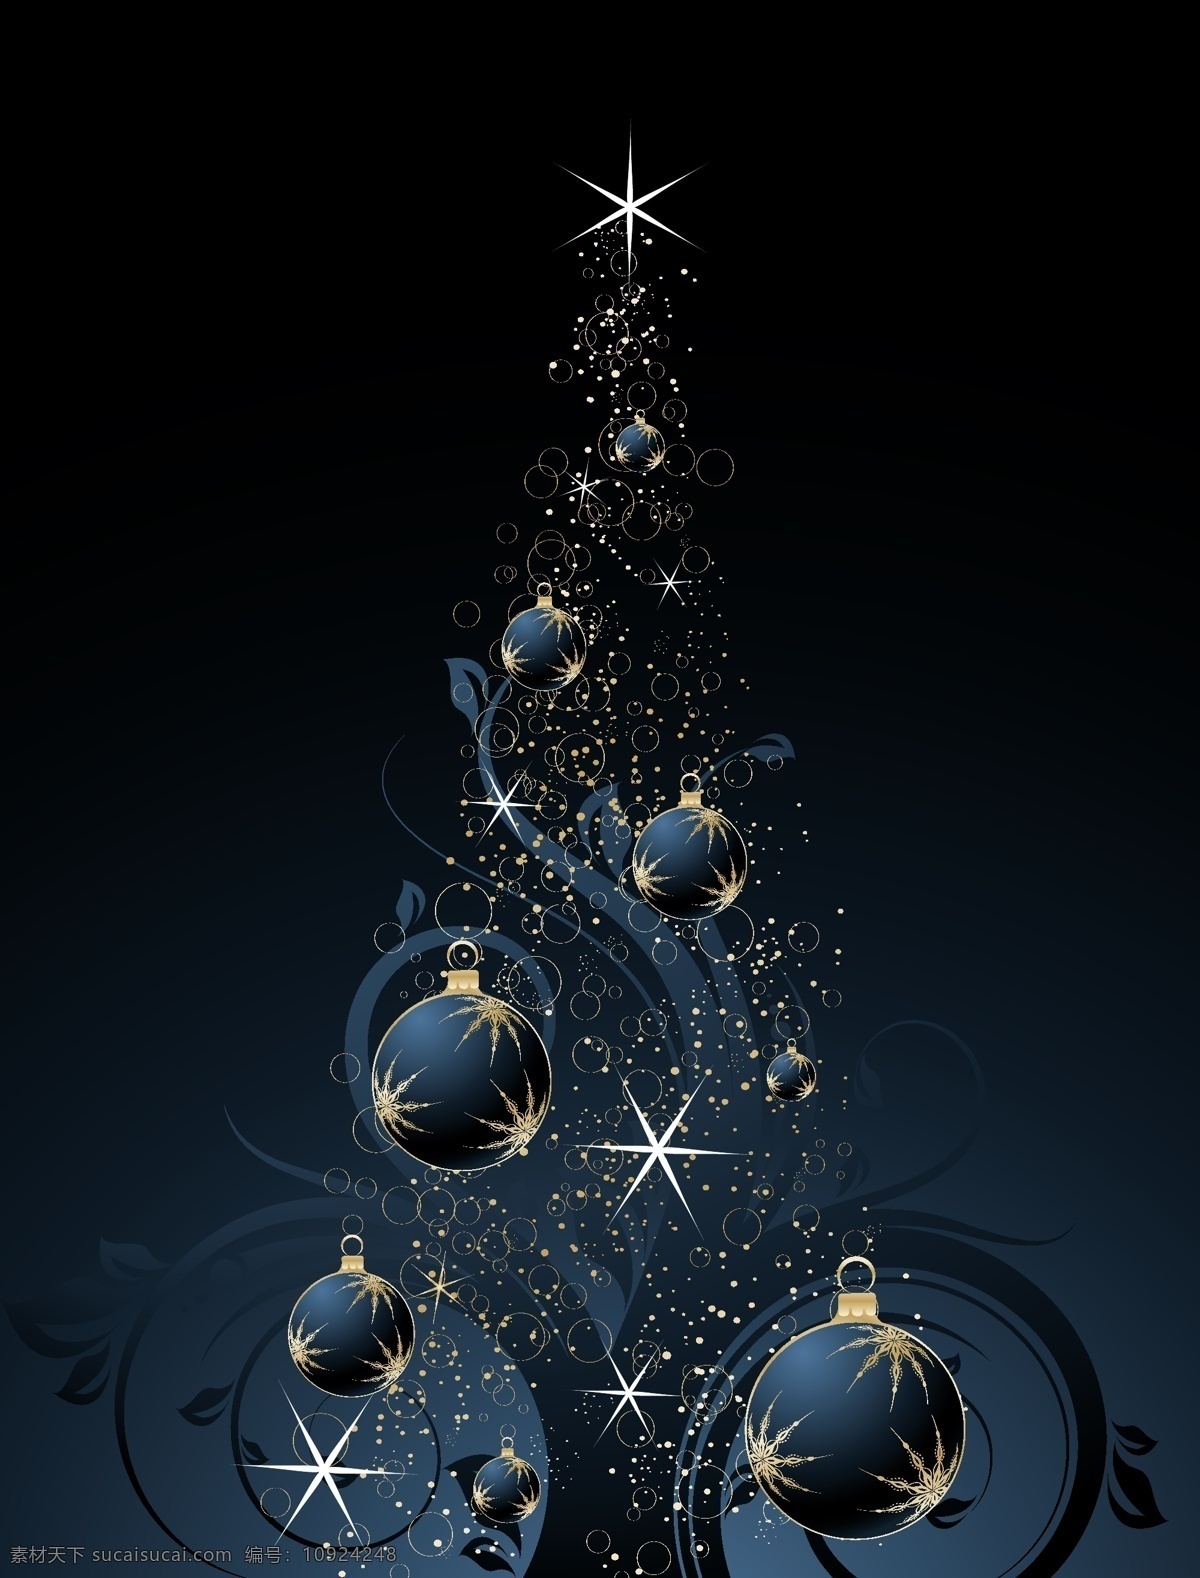 矢量 新年 圣诞节 圣诞树 圣诞快乐 merry chirstmas 星光 闪光 花纹 星星 圣诞 挂 球 装饰 节日素材 2015 元旦 春节 元宵